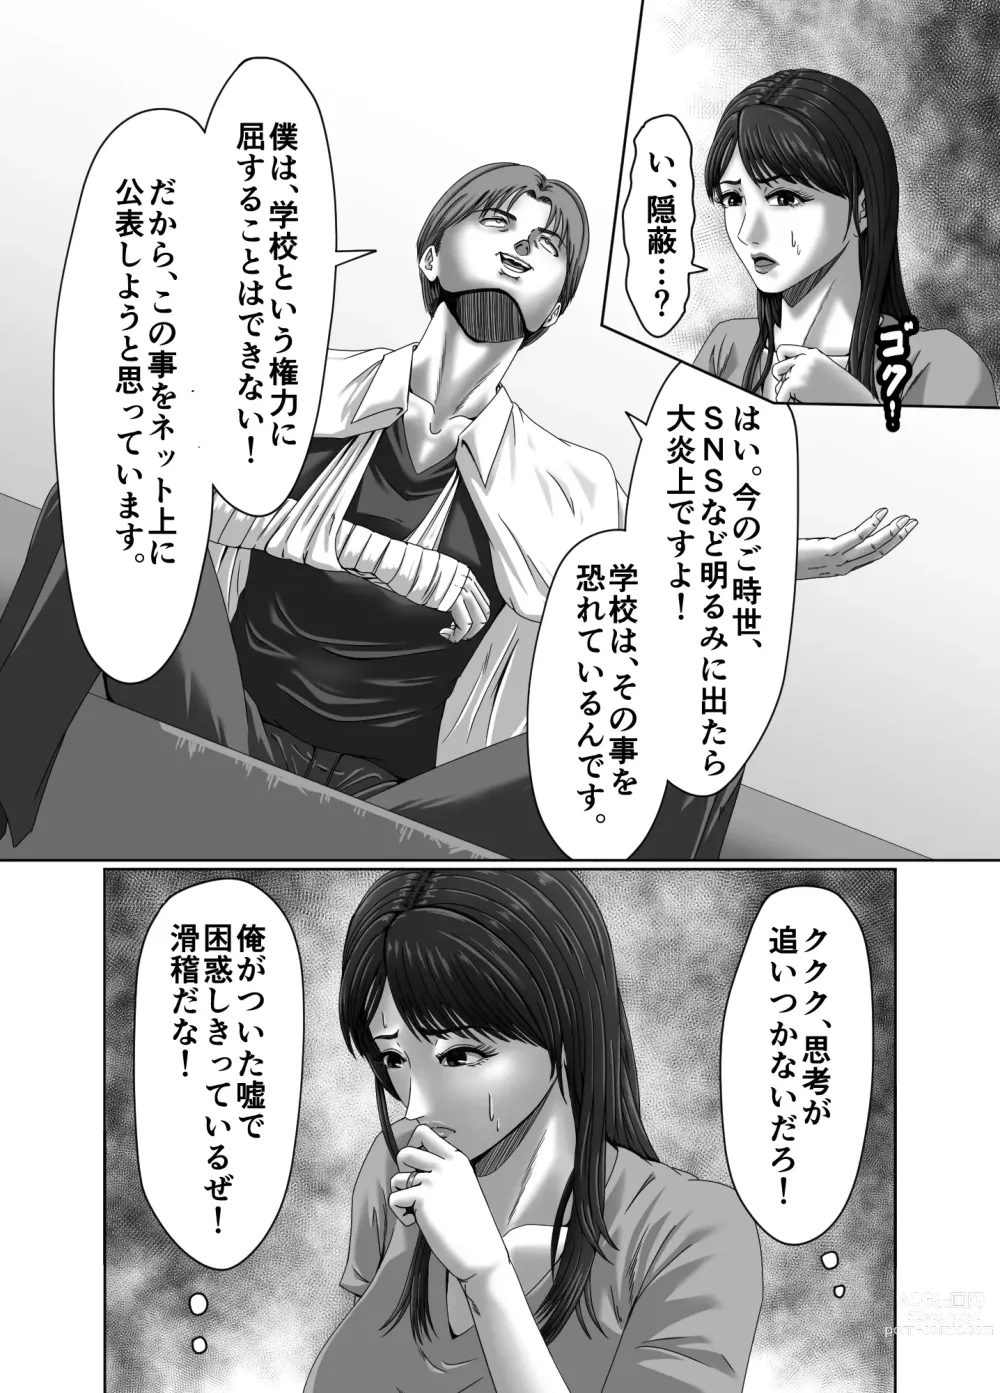 Page 20 of doujinshi Classmate no Hahaoya wo Seikangu ni Shite Moteasobu 2